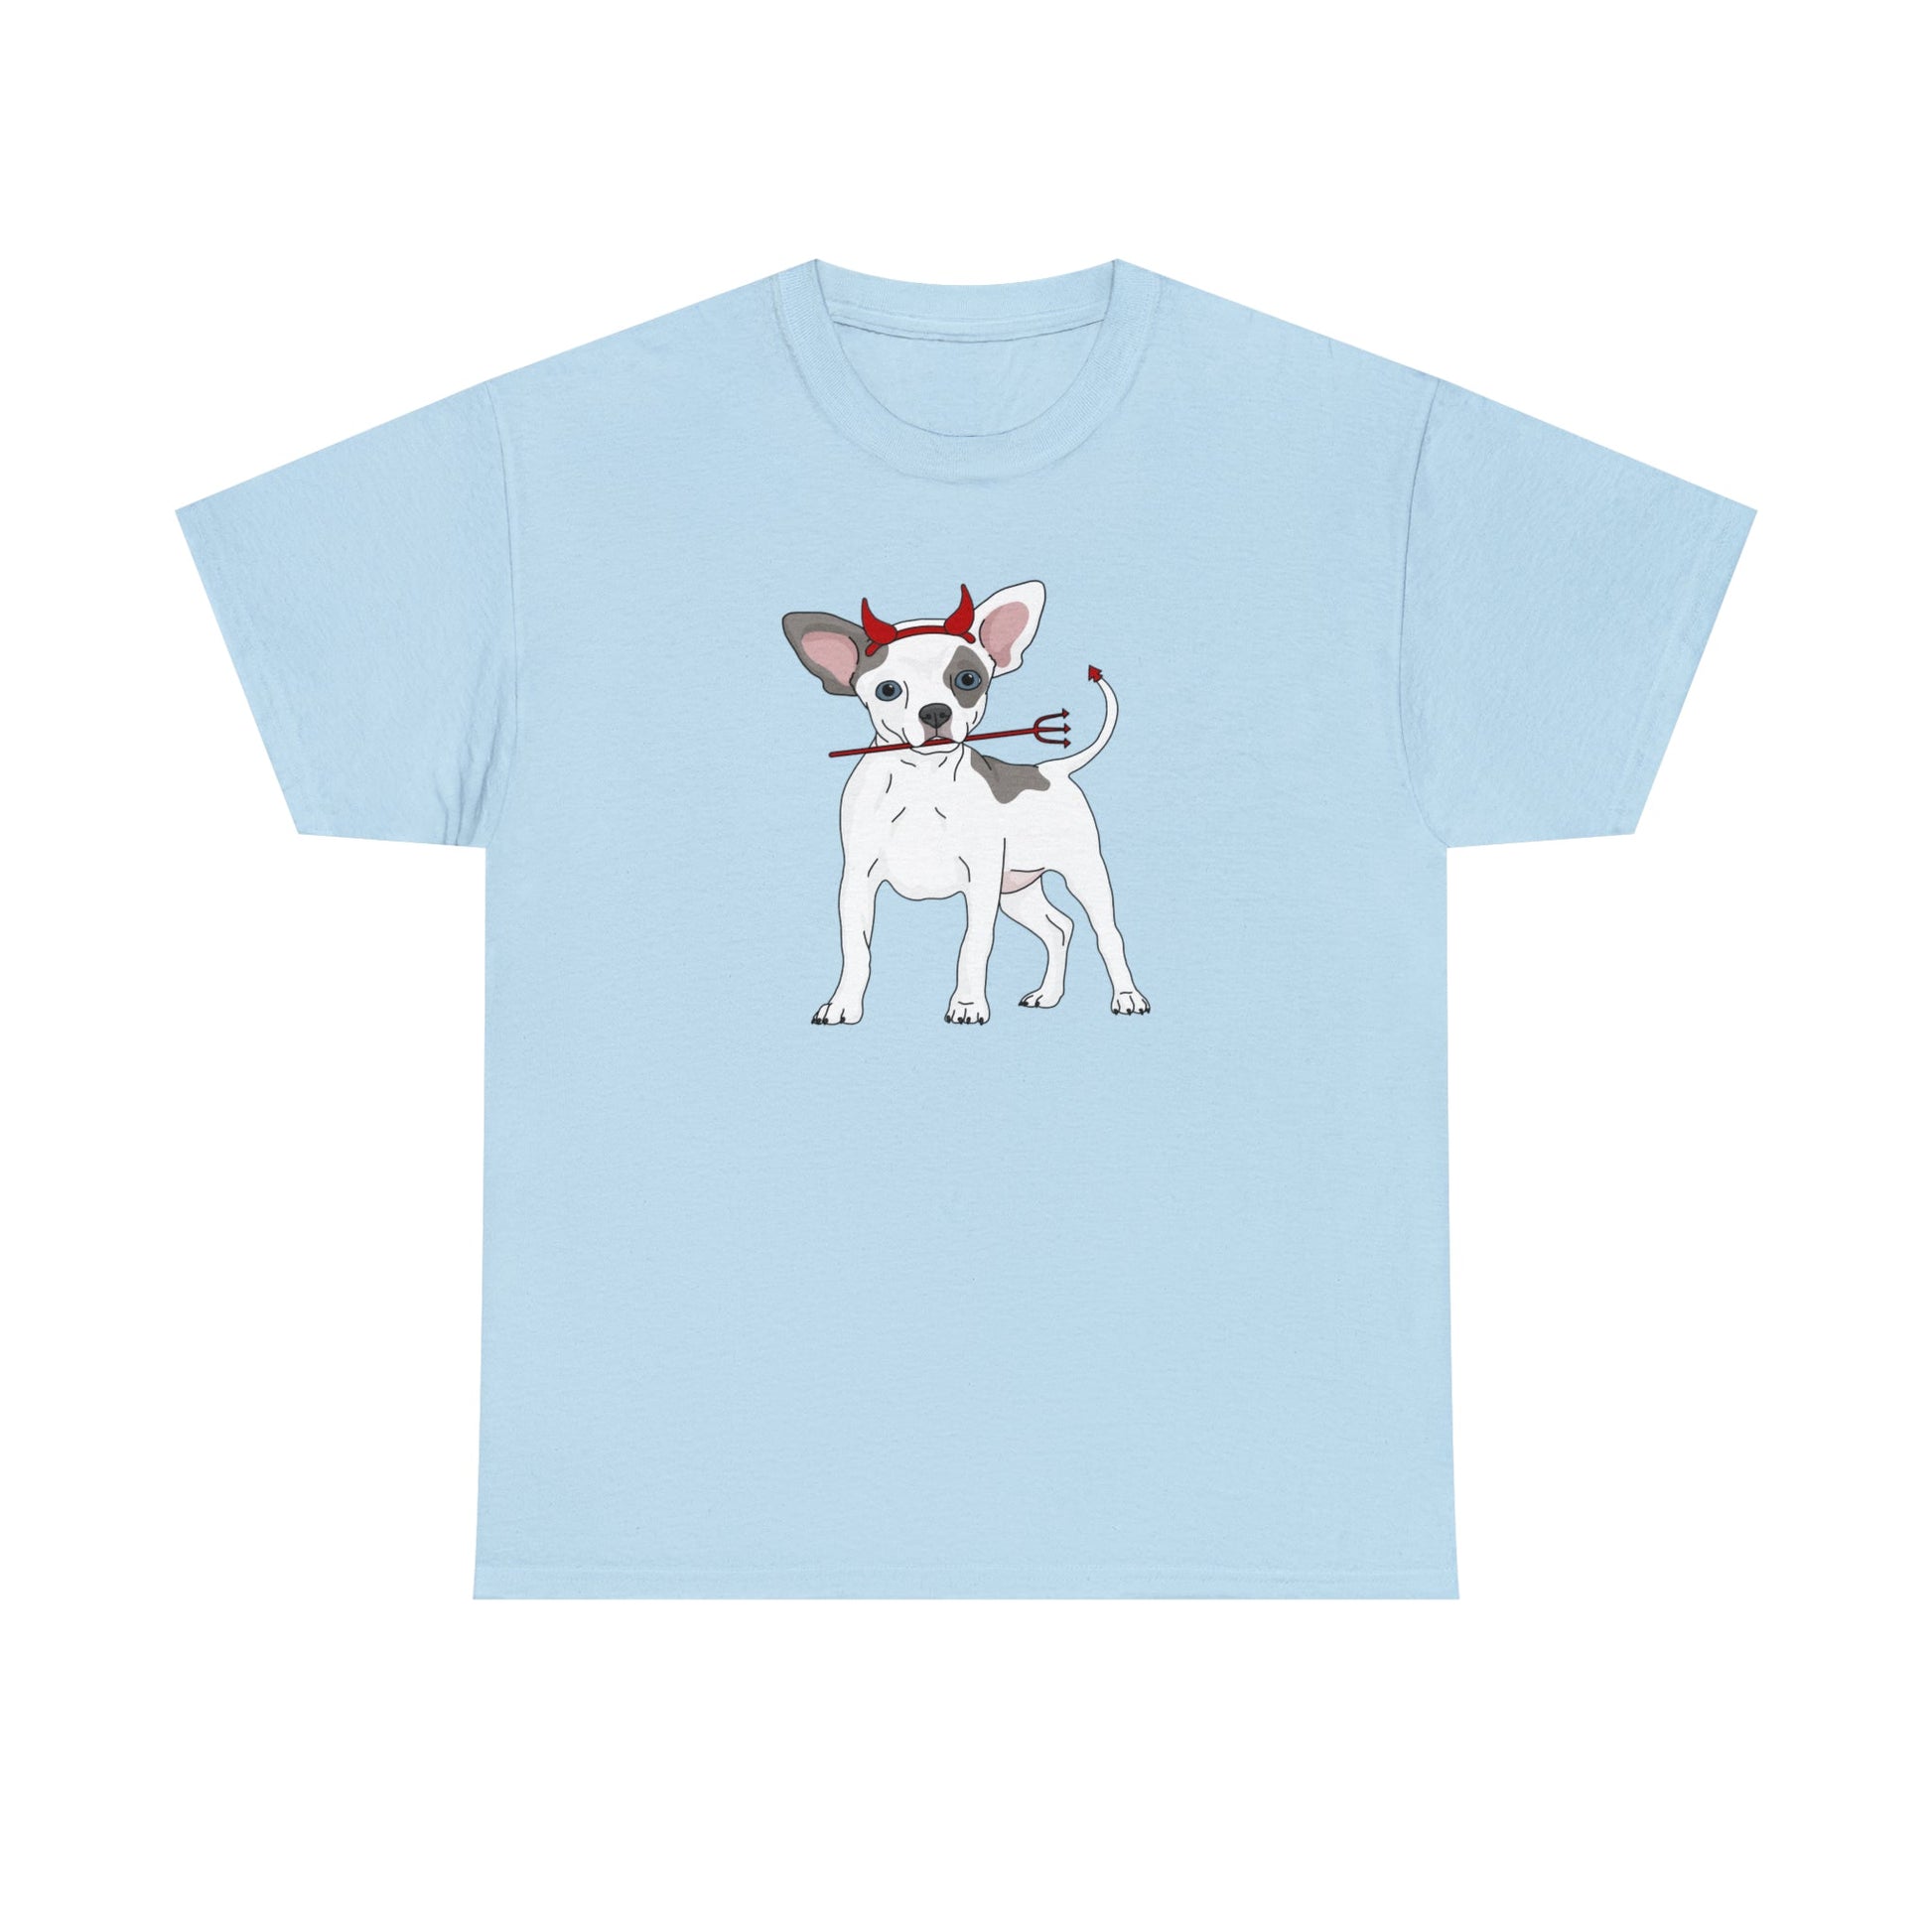 Devil Puppy | T-shirt - Detezi Designs-20581374478568842785